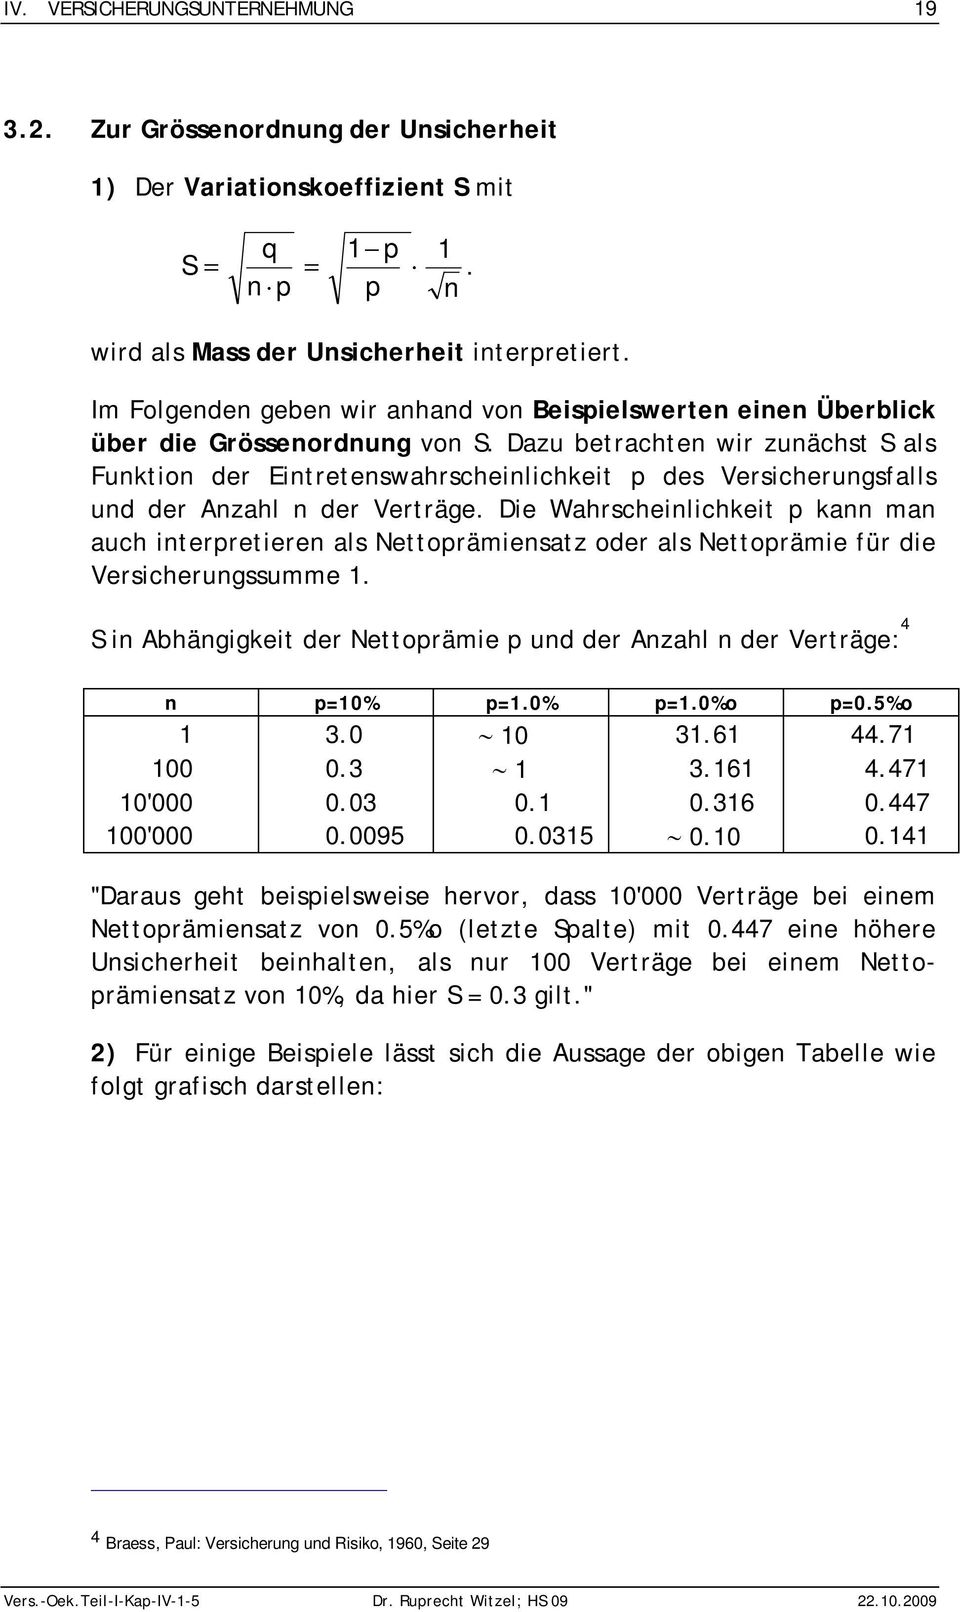 De Wahrschelchket ka ma auch terretere als Nettorämesatz oder als Nettoräme für de Verscherugssumme. S Abhäggket der Nettoräme ud der Azahl der Verträge: 4 =0% =.0% =.0%o =0.5%o 3.0 0 3.6 44.7 00 0.